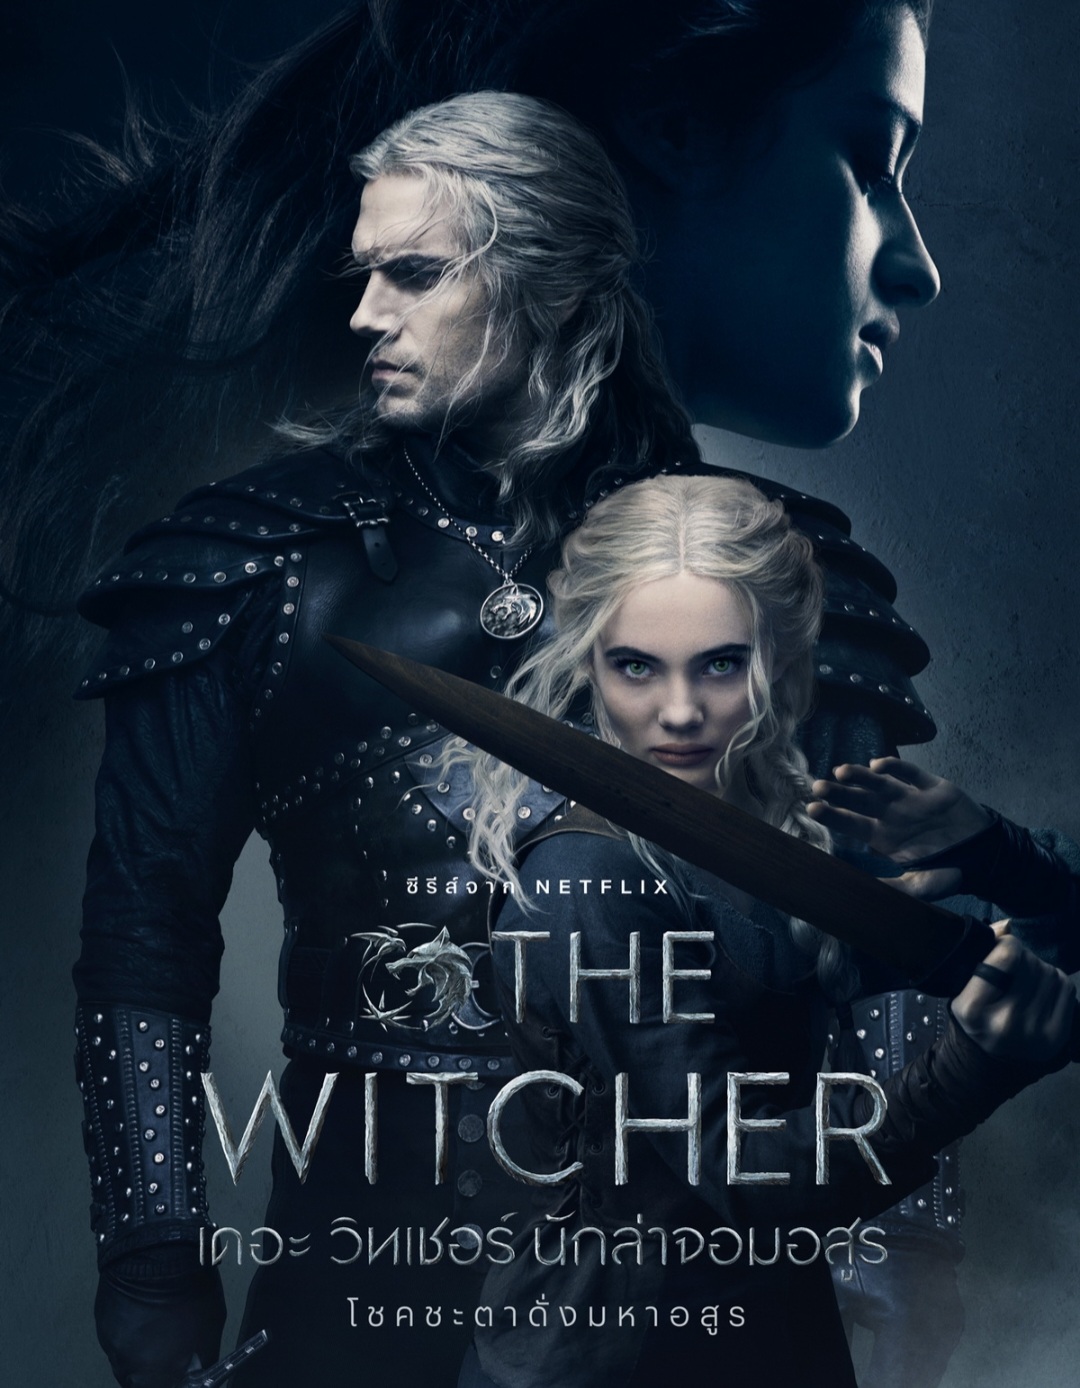 ดูซีรีย์ The Witcher (2019) เดอะ วิทเชอร์ นักล่าจอมอสูร 